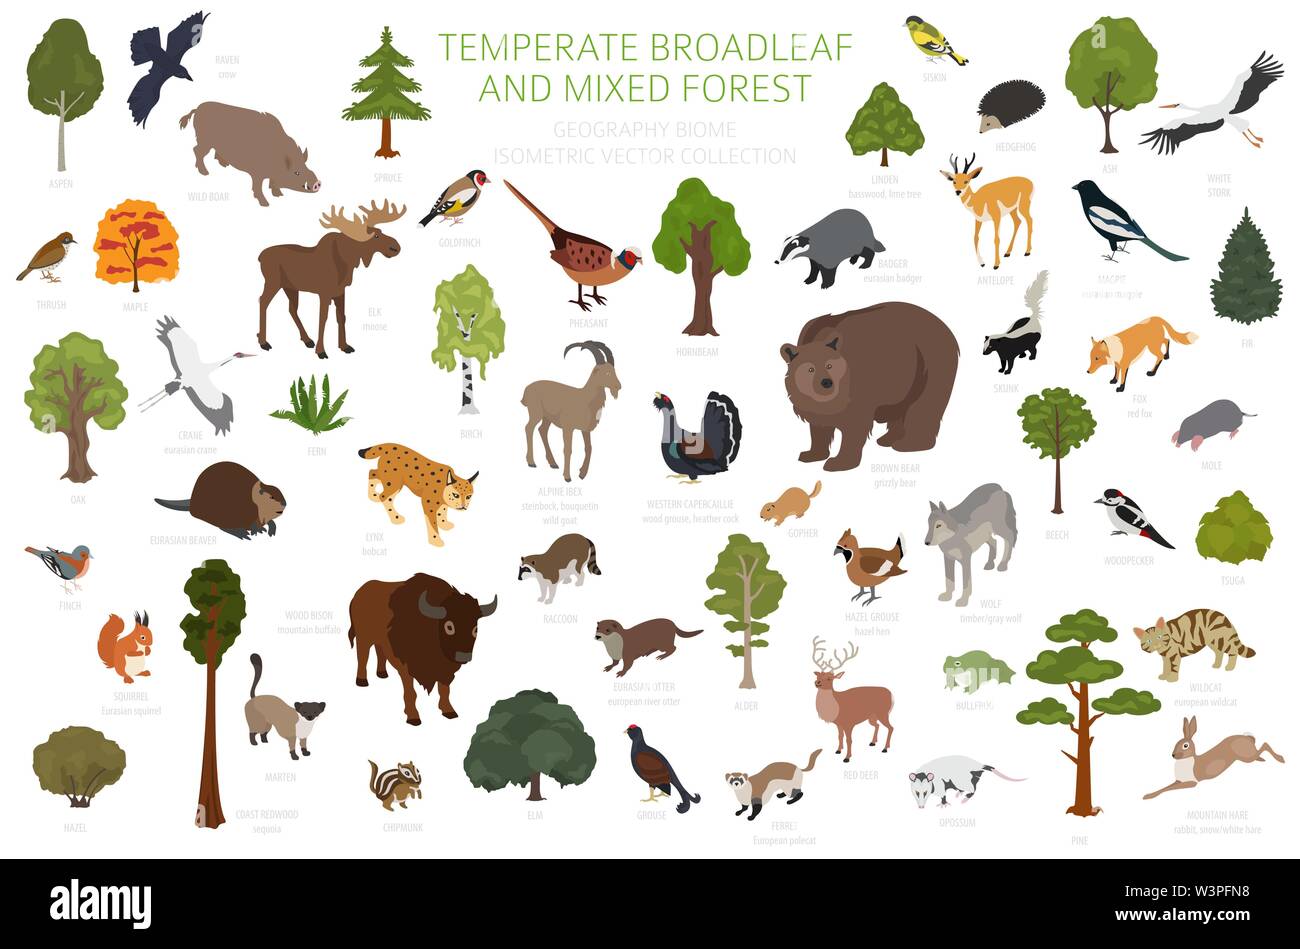 Gemäßigt breitblättrige Wald und Mischwald biome. Terrestrischen Ökosystem Weltkarte. Tiere, Vögel und Pflanzen. 3d-isometrische Grafik Design. Vektor Stock Vektor